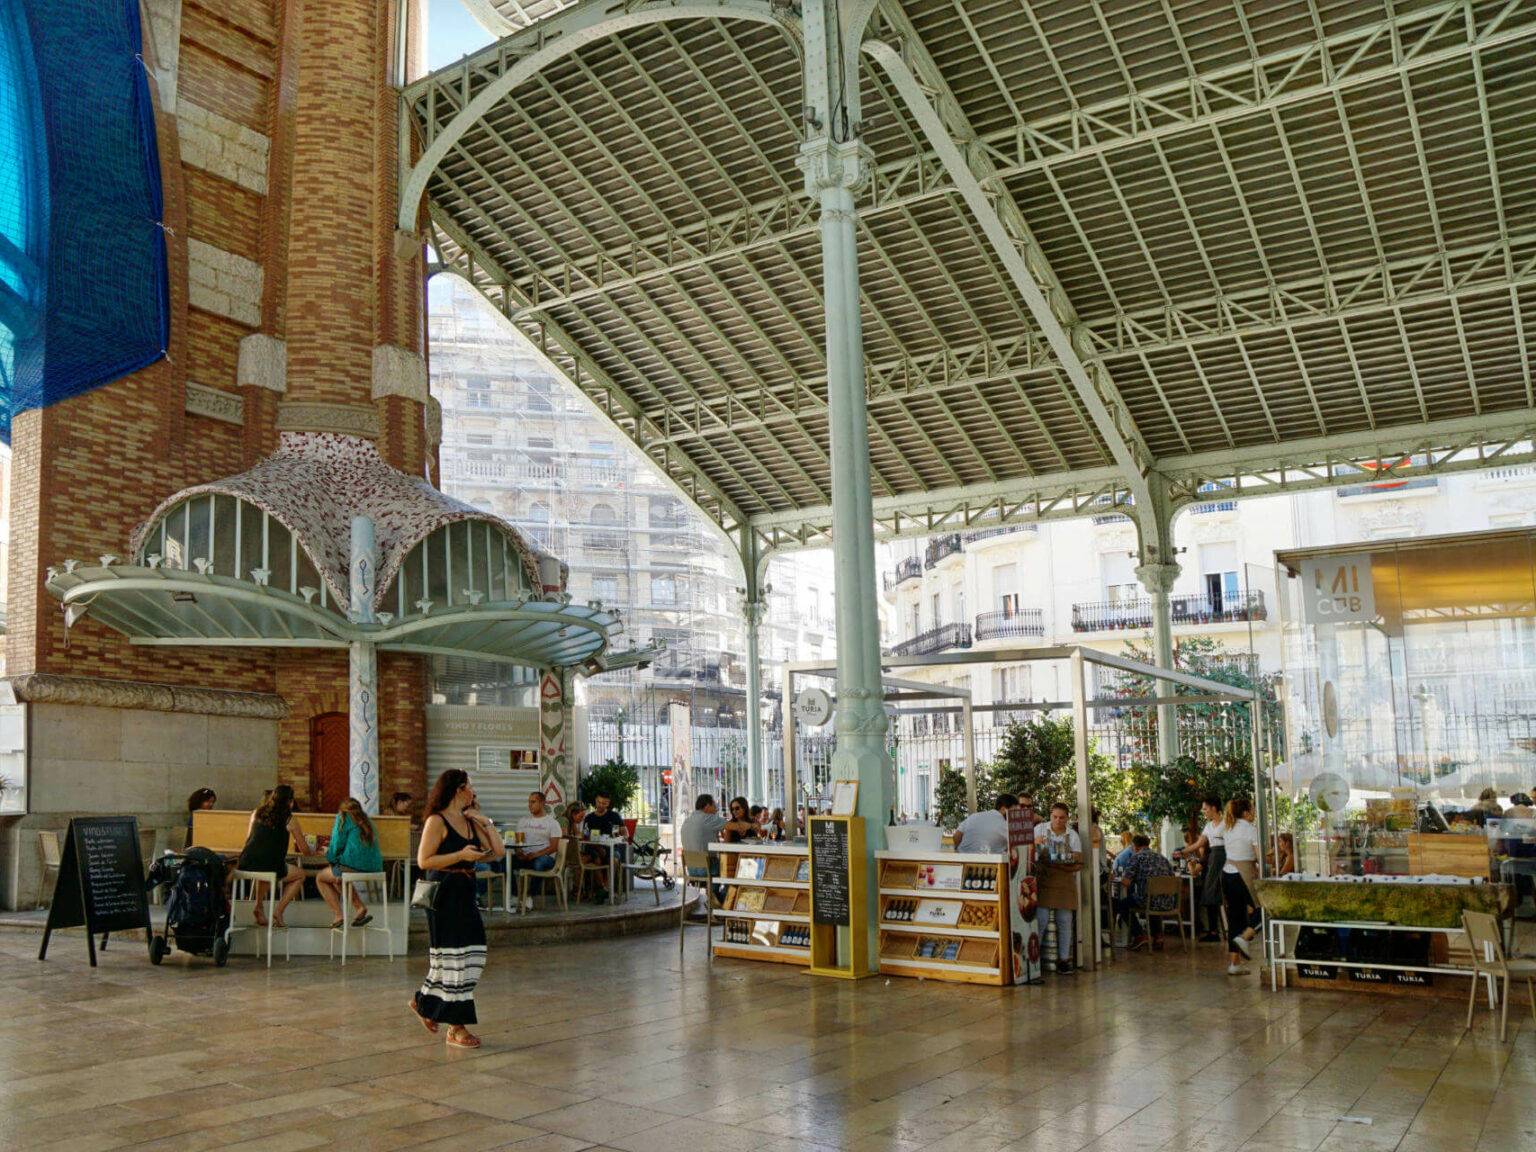 In der Markthalle Mercado Colon in Valencia befinden sich einige Stände mit typisch spanischen kulinarischen Geheimtipps.